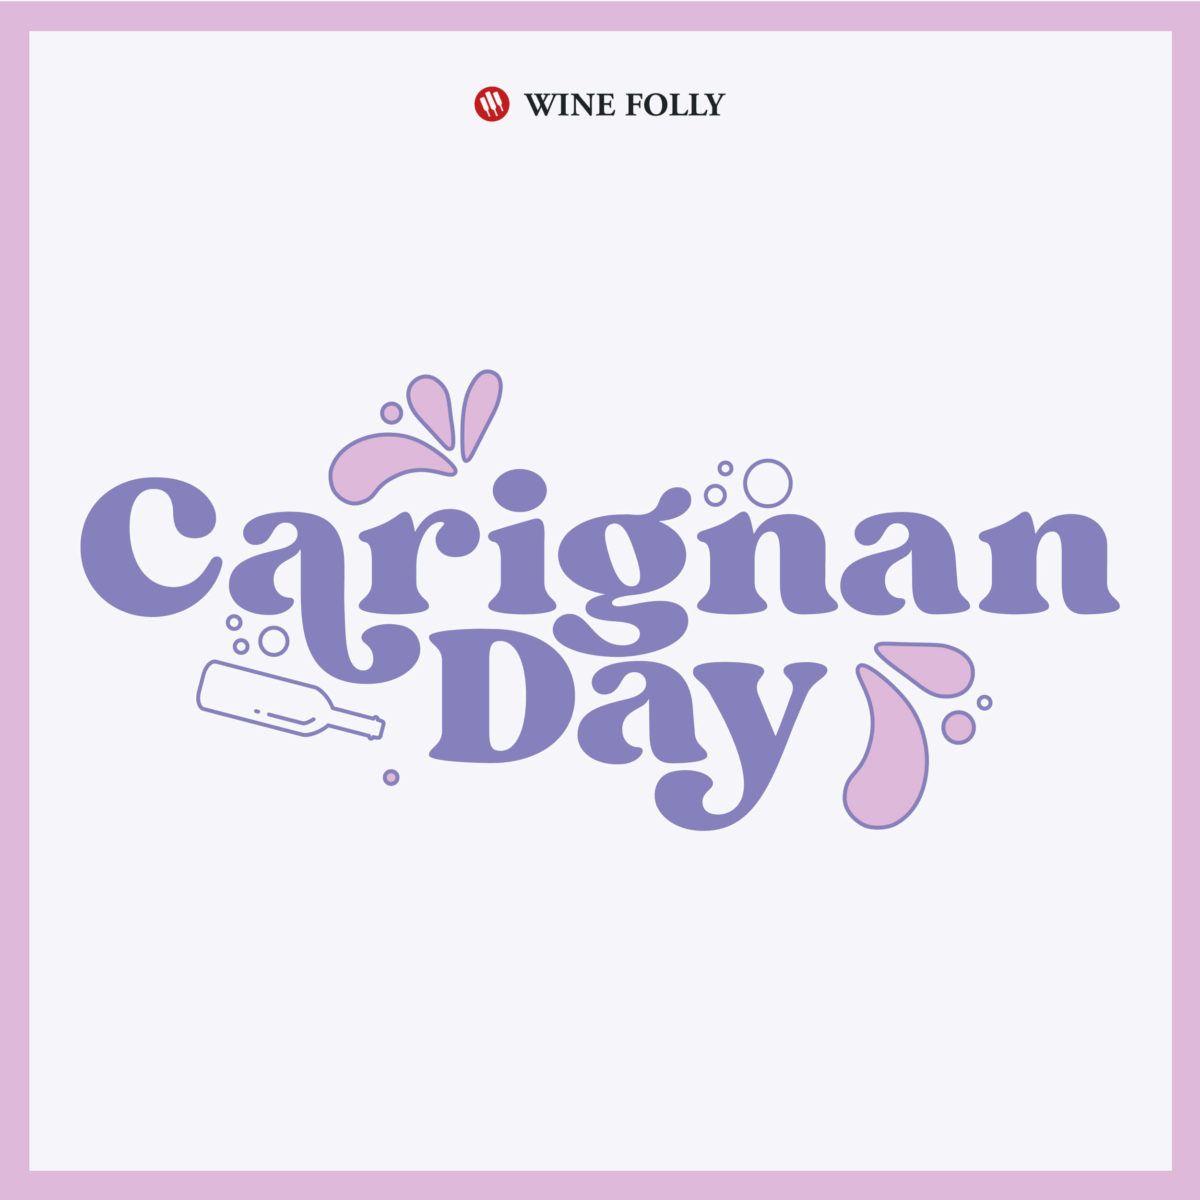 vinski prazniki-caignan